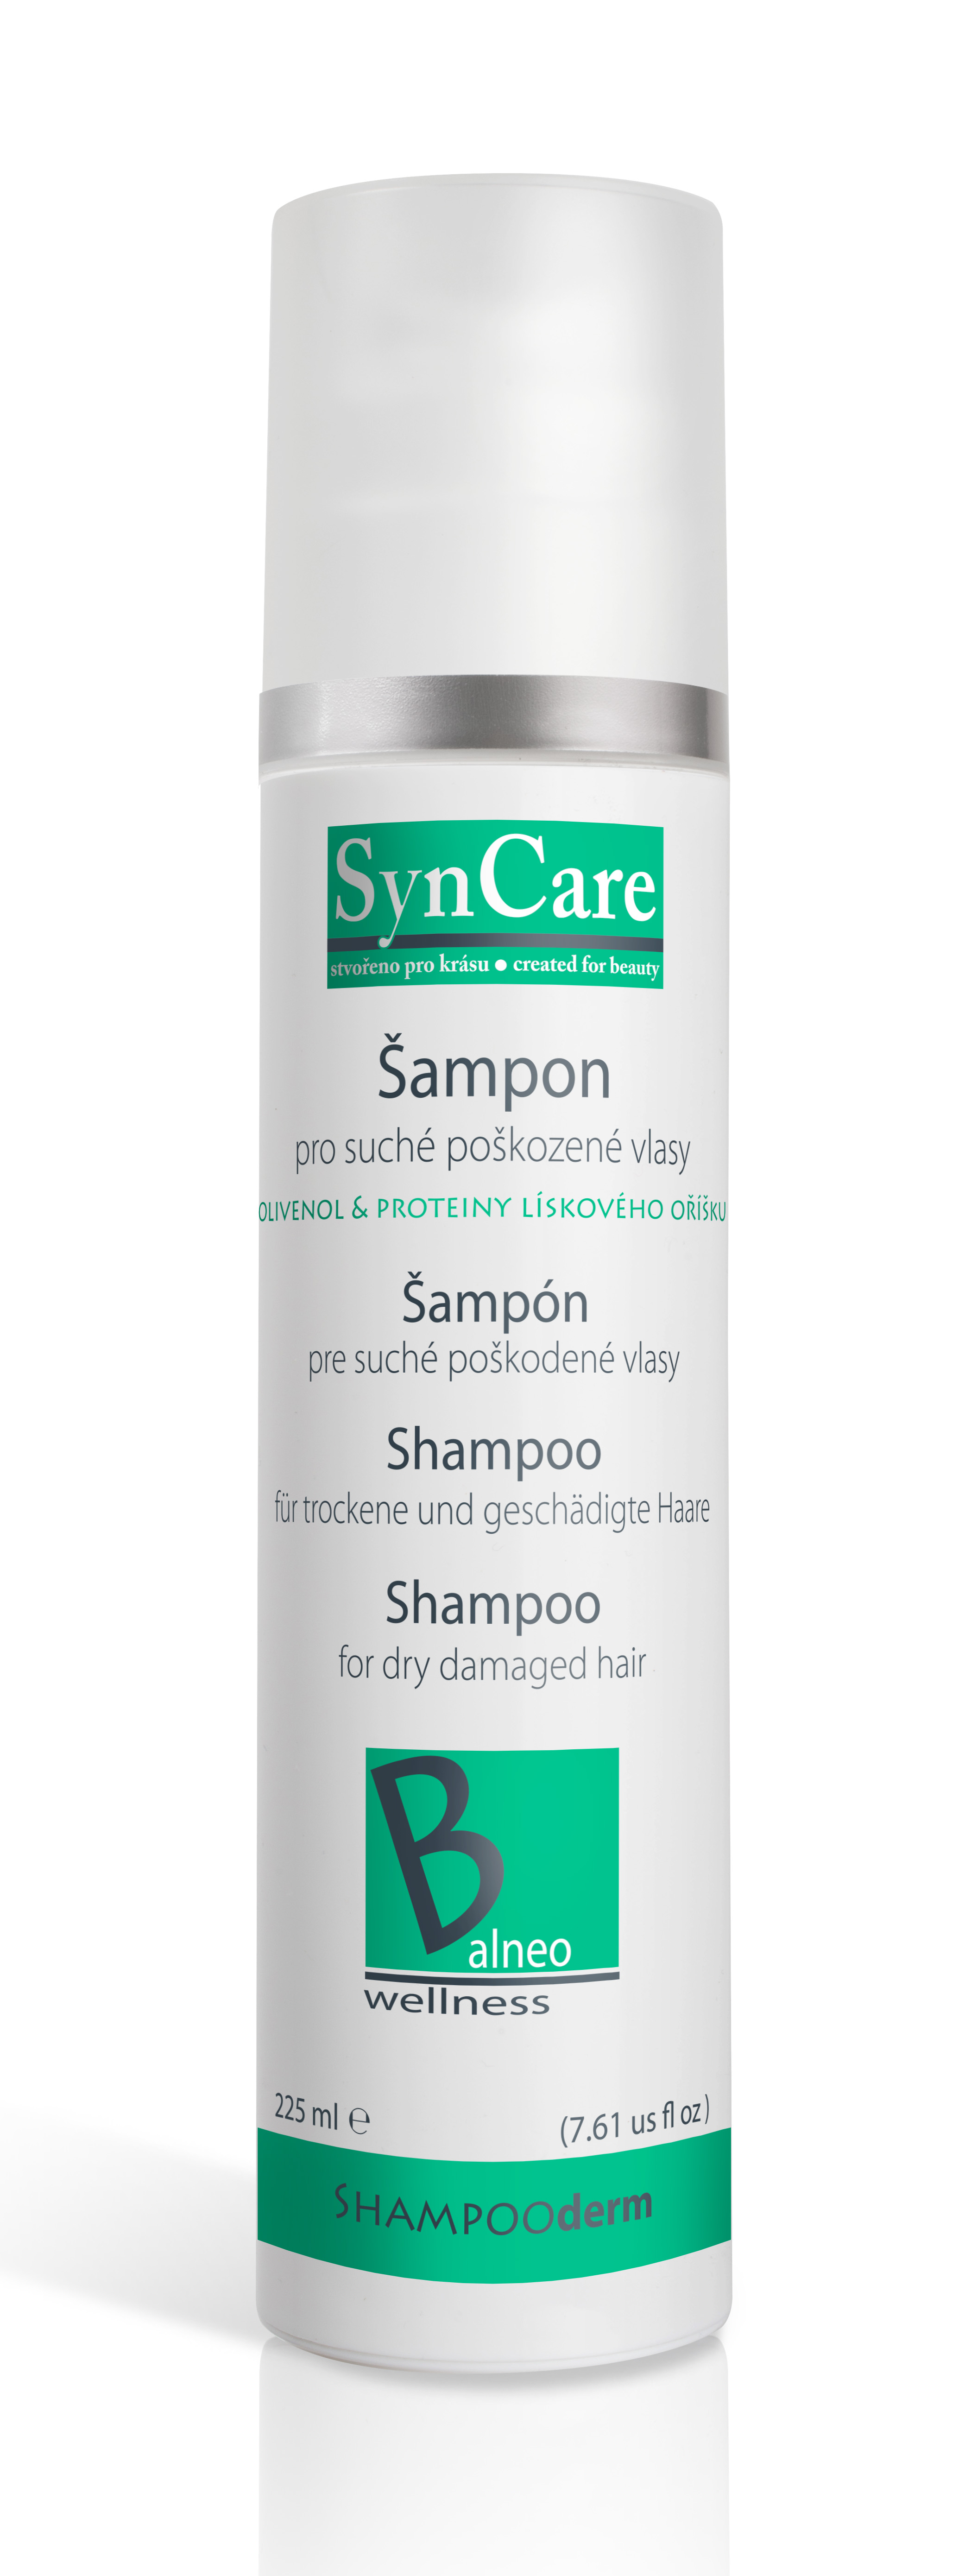 Syncare SHAMPOOderm šampon pro suché poškozené vlasy 225ml